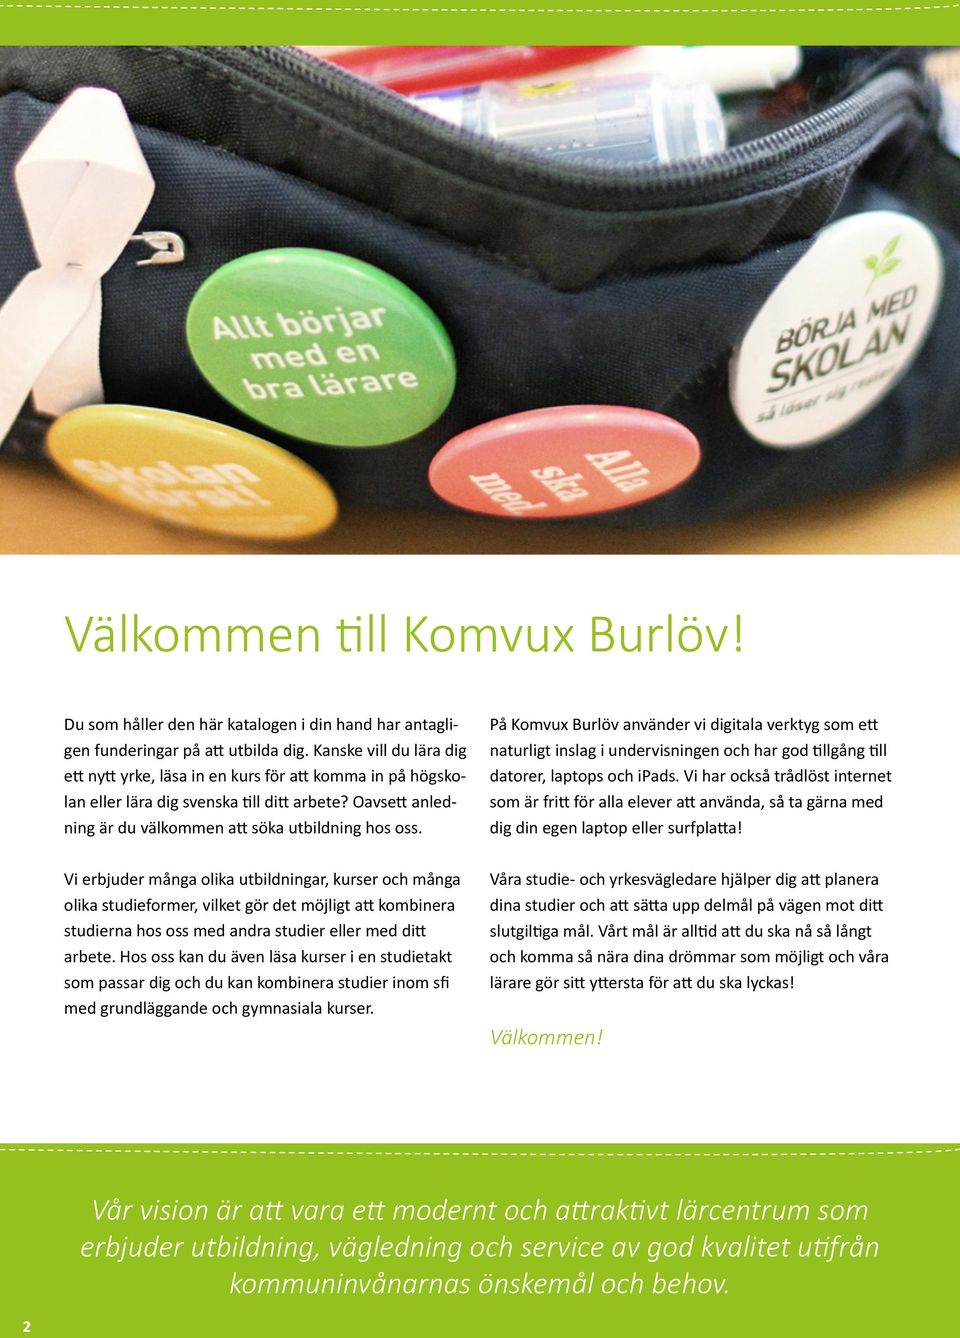 På Komvux Burlöv använder vi digitala verktyg som ett naturligt inslag i undervisningen och har god tillgång till datorer, laptops och ipads.